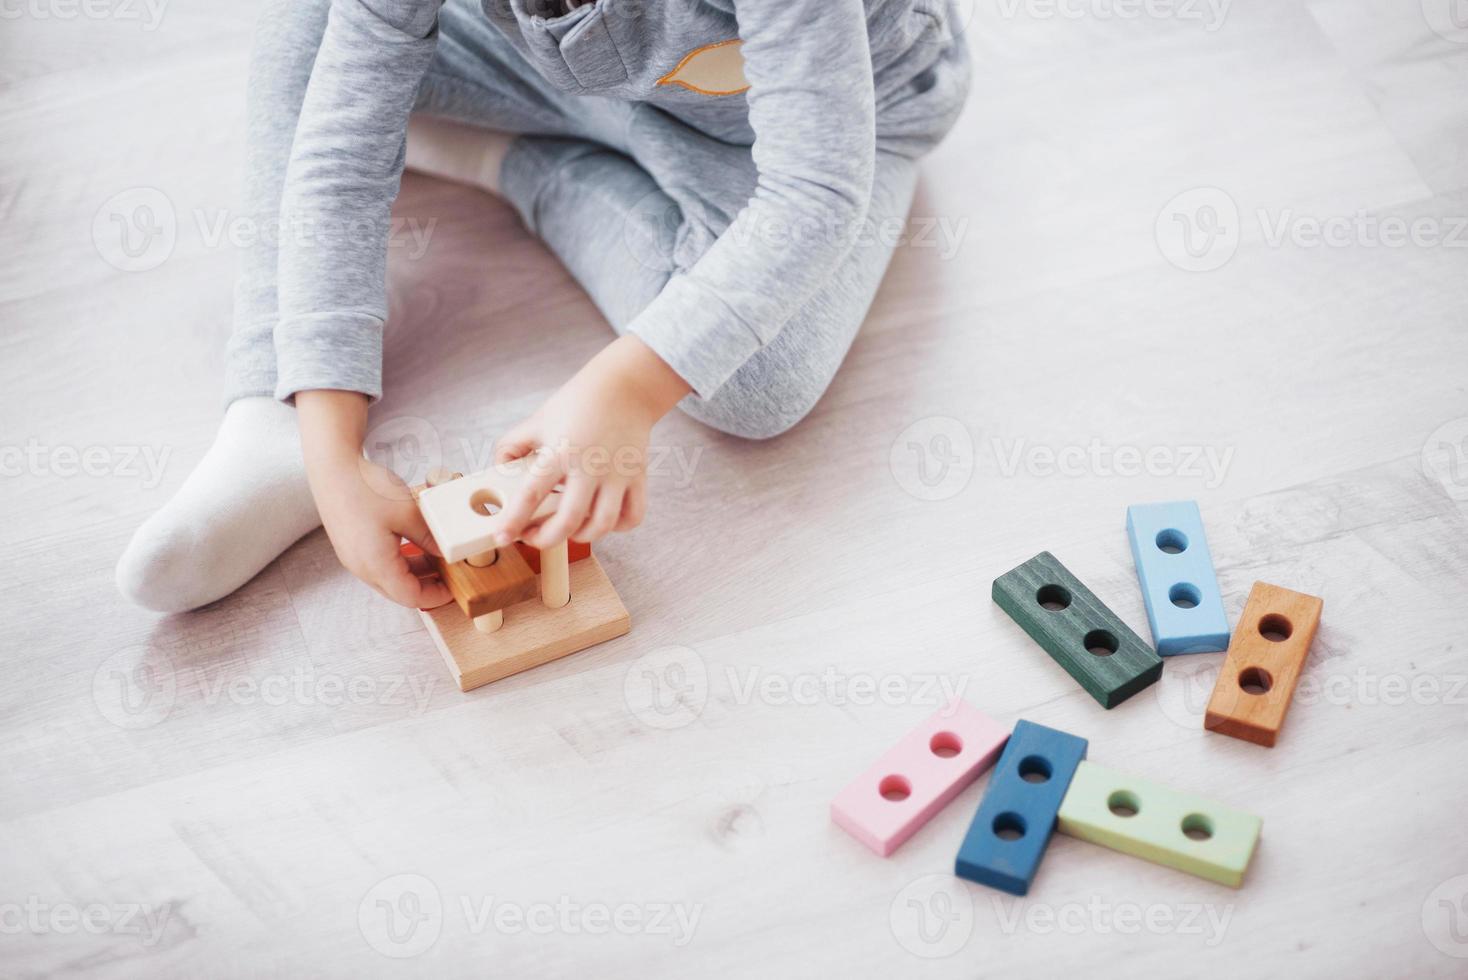 kinderen spelen met een speelgoedontwerper op de vloer van de kinderkamer. twee kinderen spelen met kleurrijke blokken. educatieve spelletjes voor de kleuterschool foto